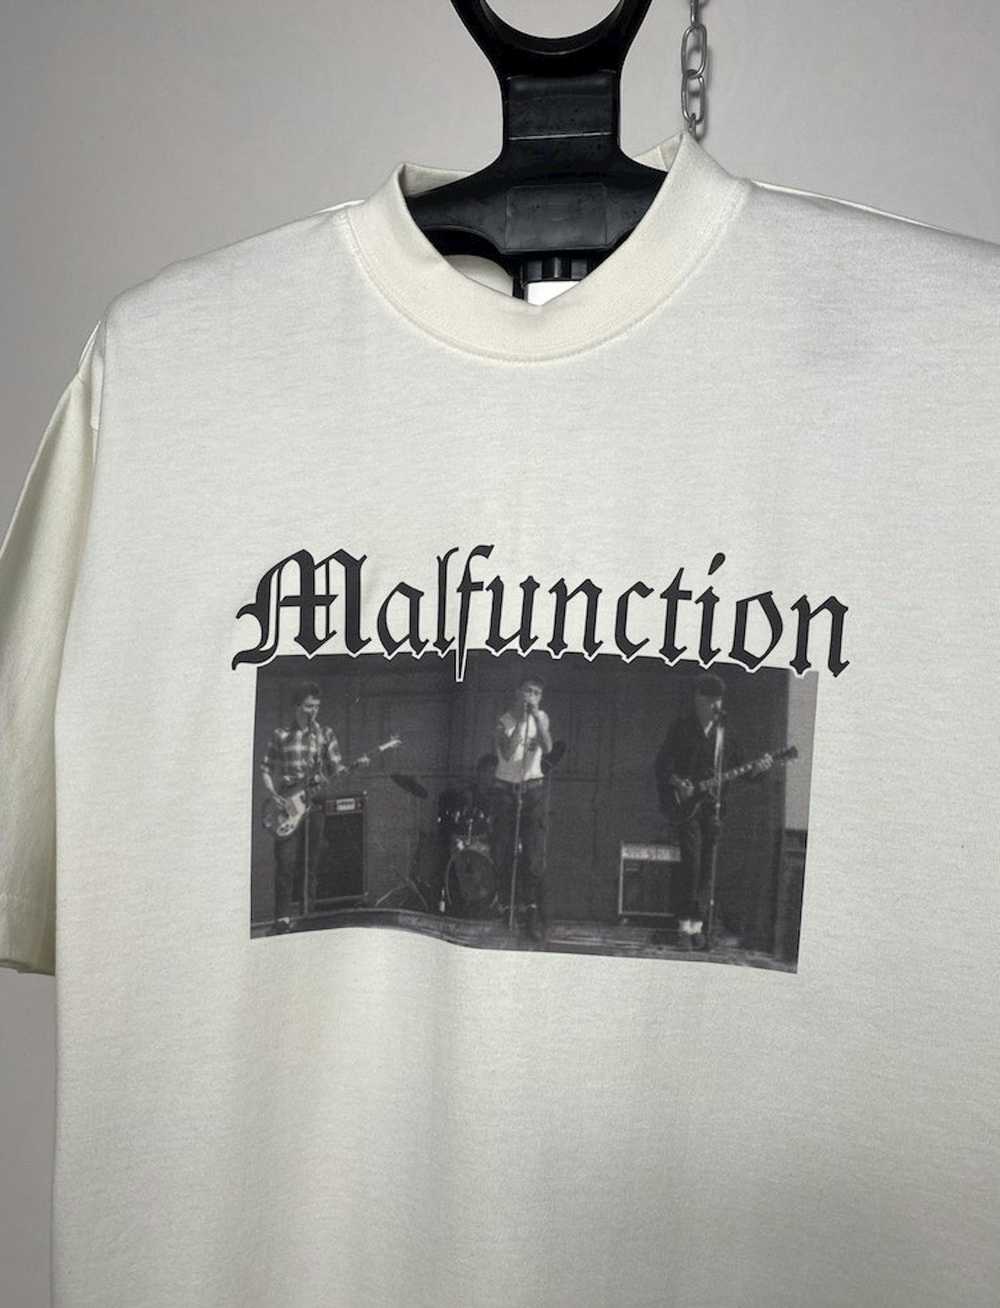 Band Tees × Rock Band × Rock T Shirt Malfunction … - image 2